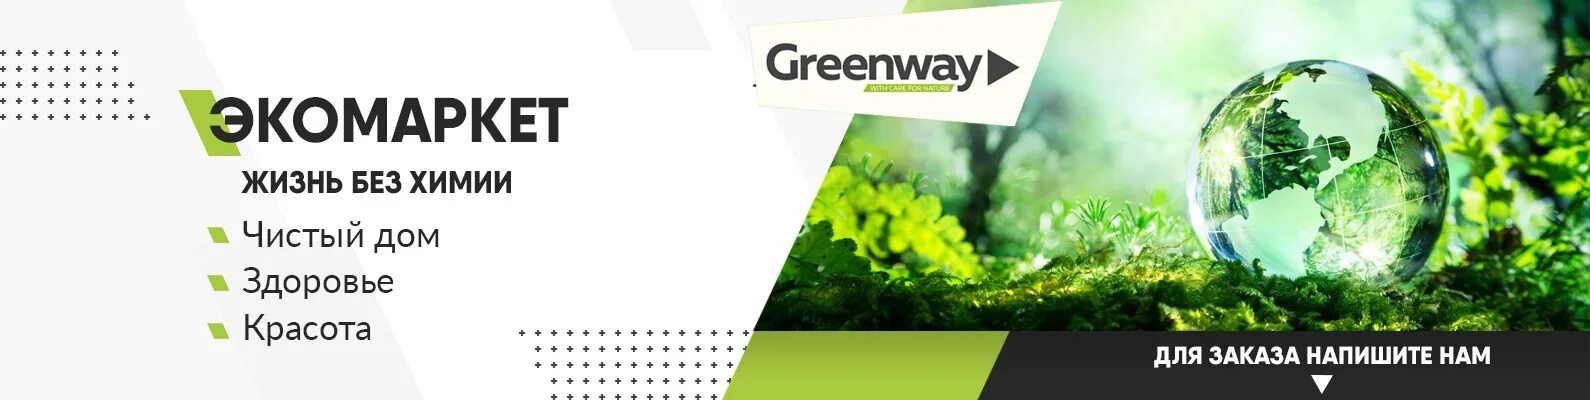 Greenway чистый дом. Greenway реклама. Экомаркет Гринвей. Реклама Гринвей.